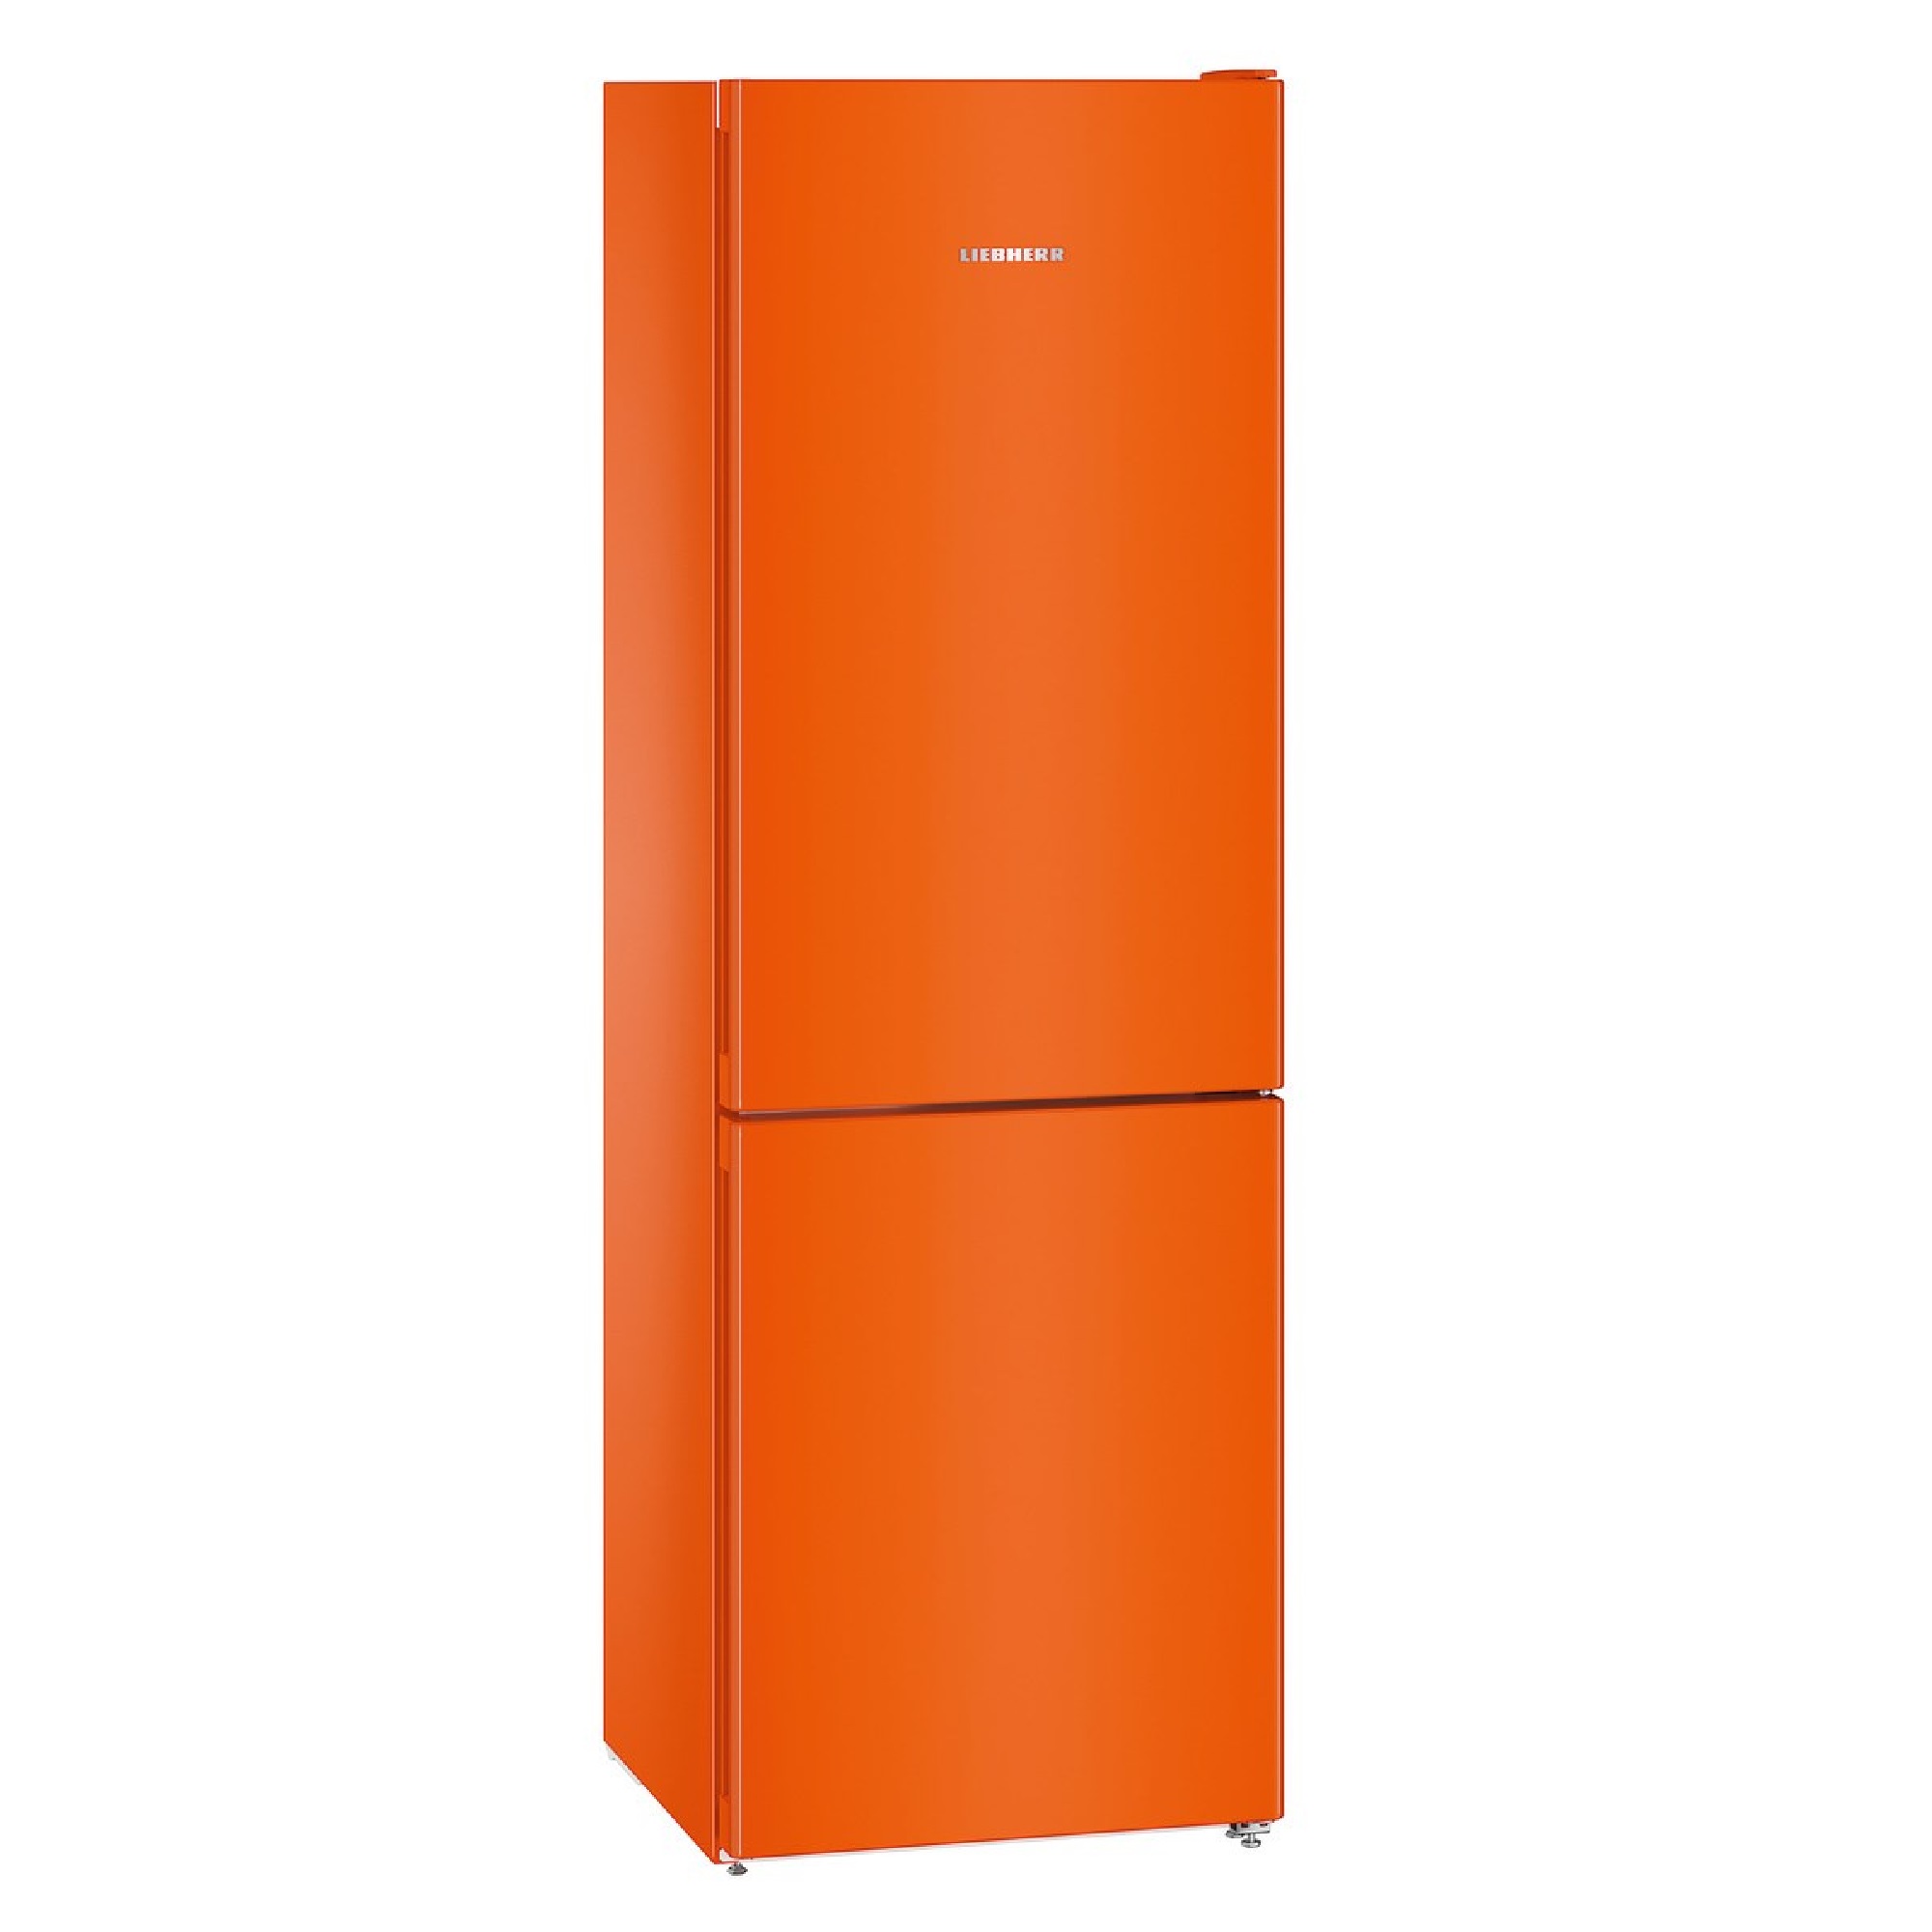 Спб купить холодильник недорого двухкамерный. Холодильник Liebherr CNNO 4313. Холодильник Либхер 4313 оранжевый. Холодильник Liebherr CNNO 4313 оранжевый. Liebherr CNNO 4313 оранжевый.